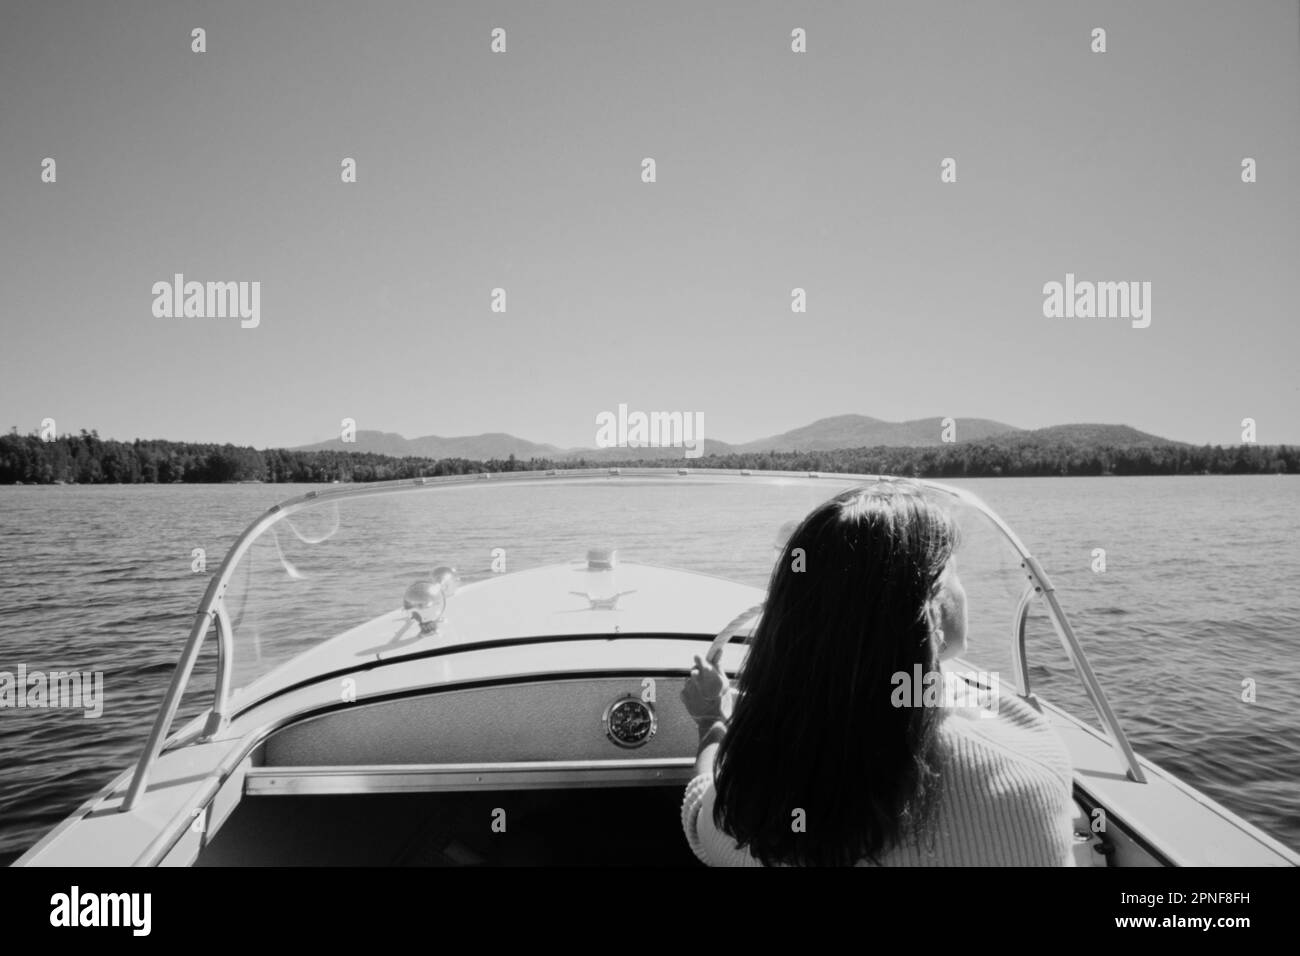 États-Unis, New York, Santa Clara, vue arrière d'une femme conduisant un bateau à moteur sur le lac supérieur de Saranac, noir et blanc Banque D'Images